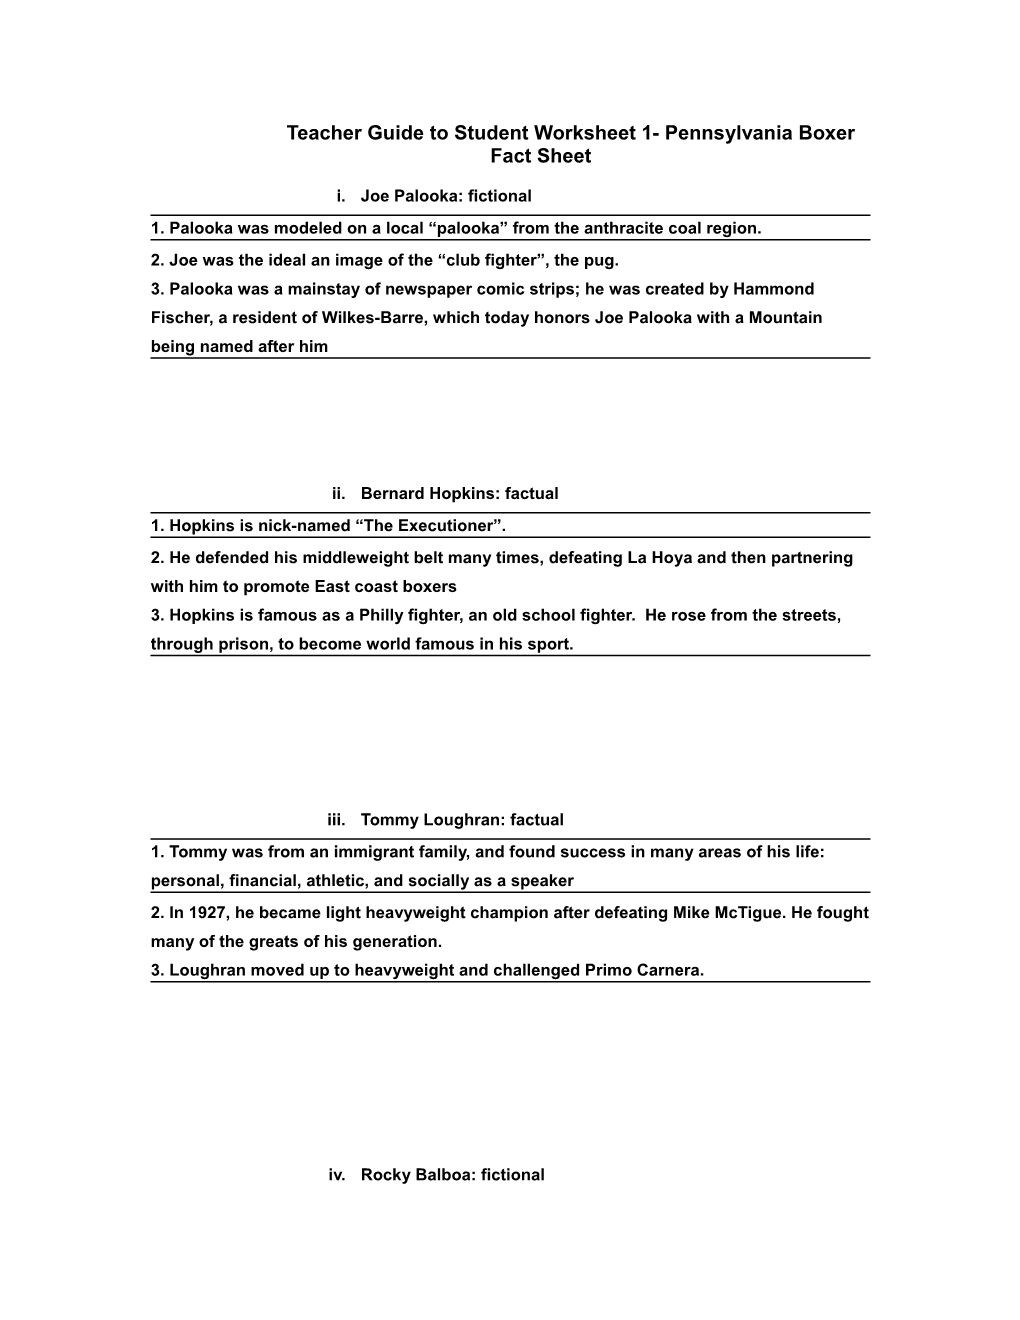 Teacher Guide to Student Worksheet 1- Pennsylvania Boxer Fact Sheet